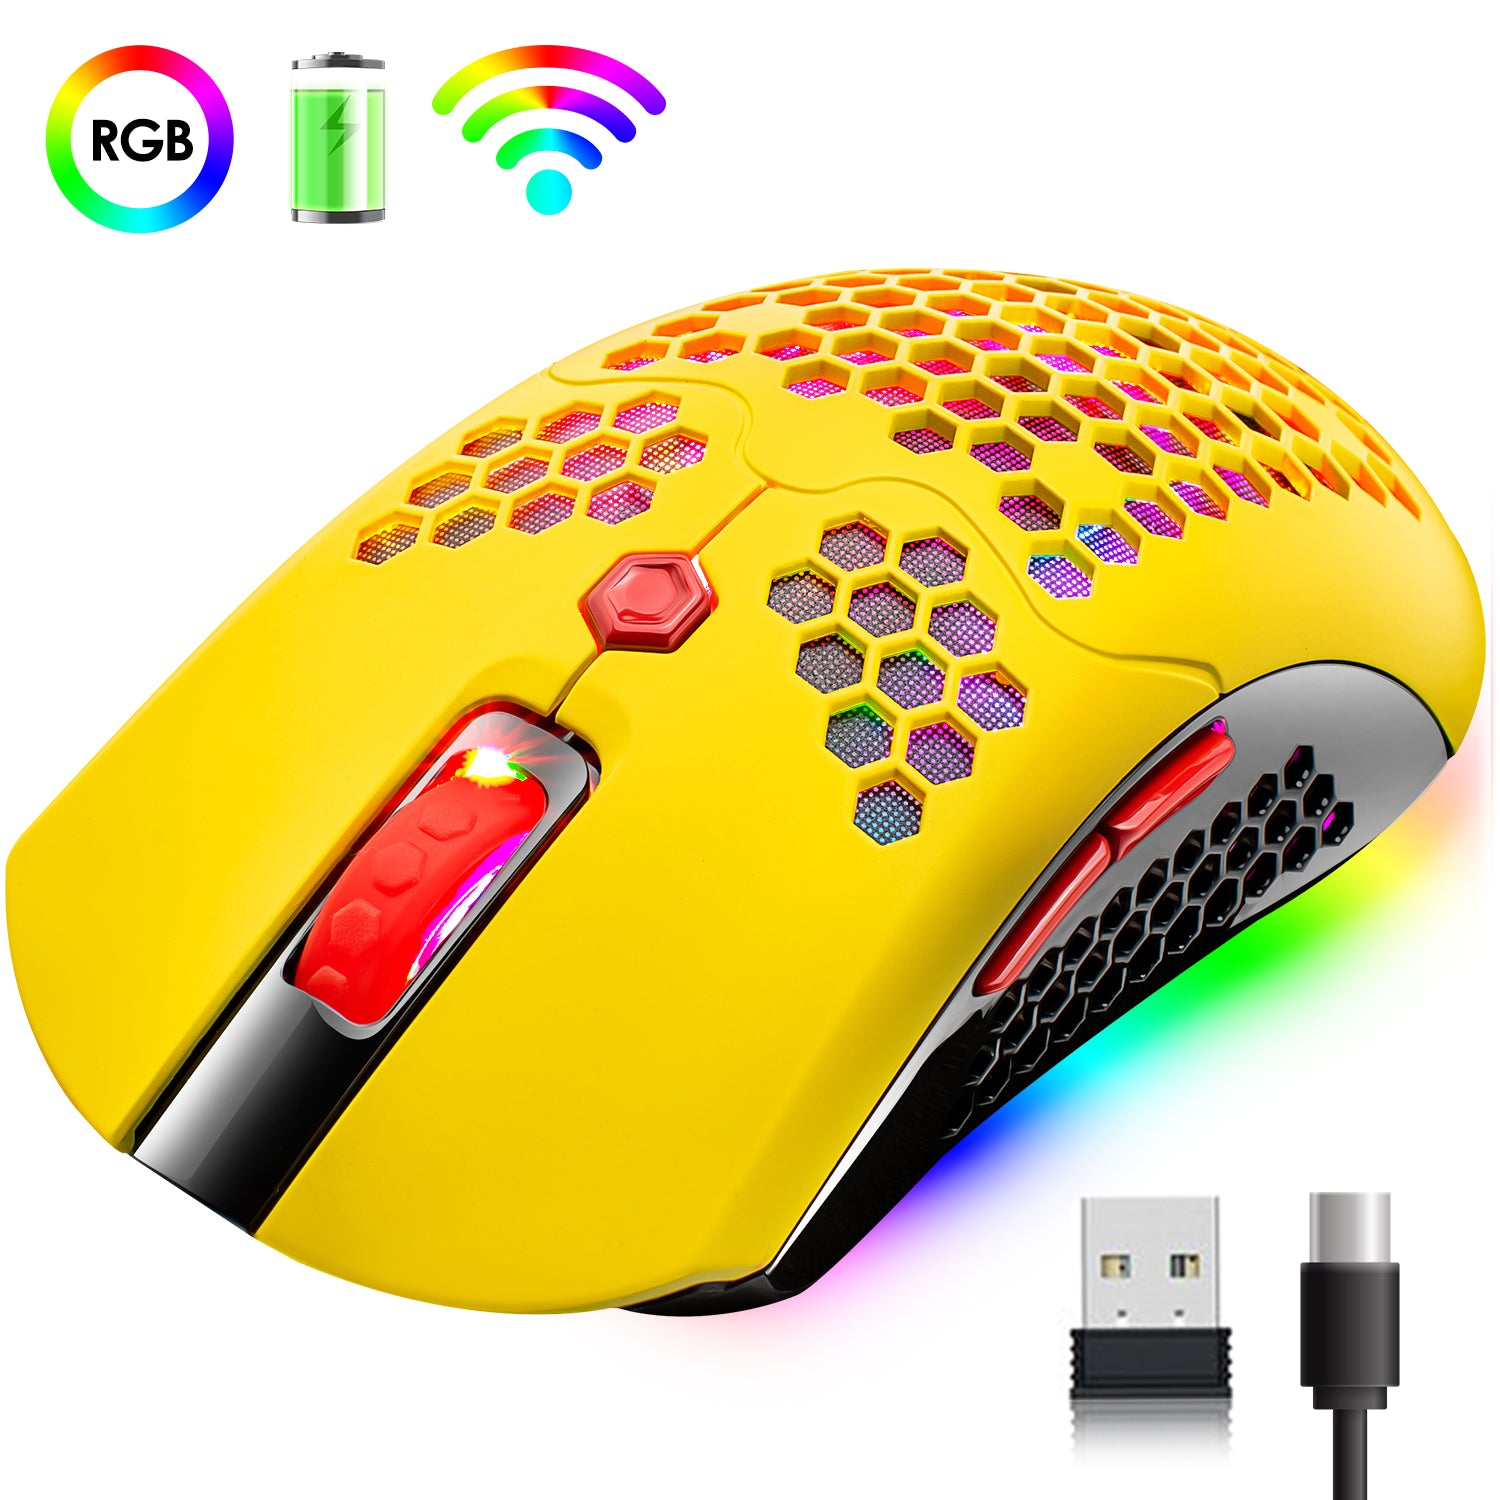 Ratón inalámbrico para juegos, 16 ratones inalámbricos/con cable retroiluminados RGB ultraligeros con controlador programable, batería recargable de 800 mA, Pixart 3325 12000 DPI, carcasa de nido de abeja liviana para PC Gamer